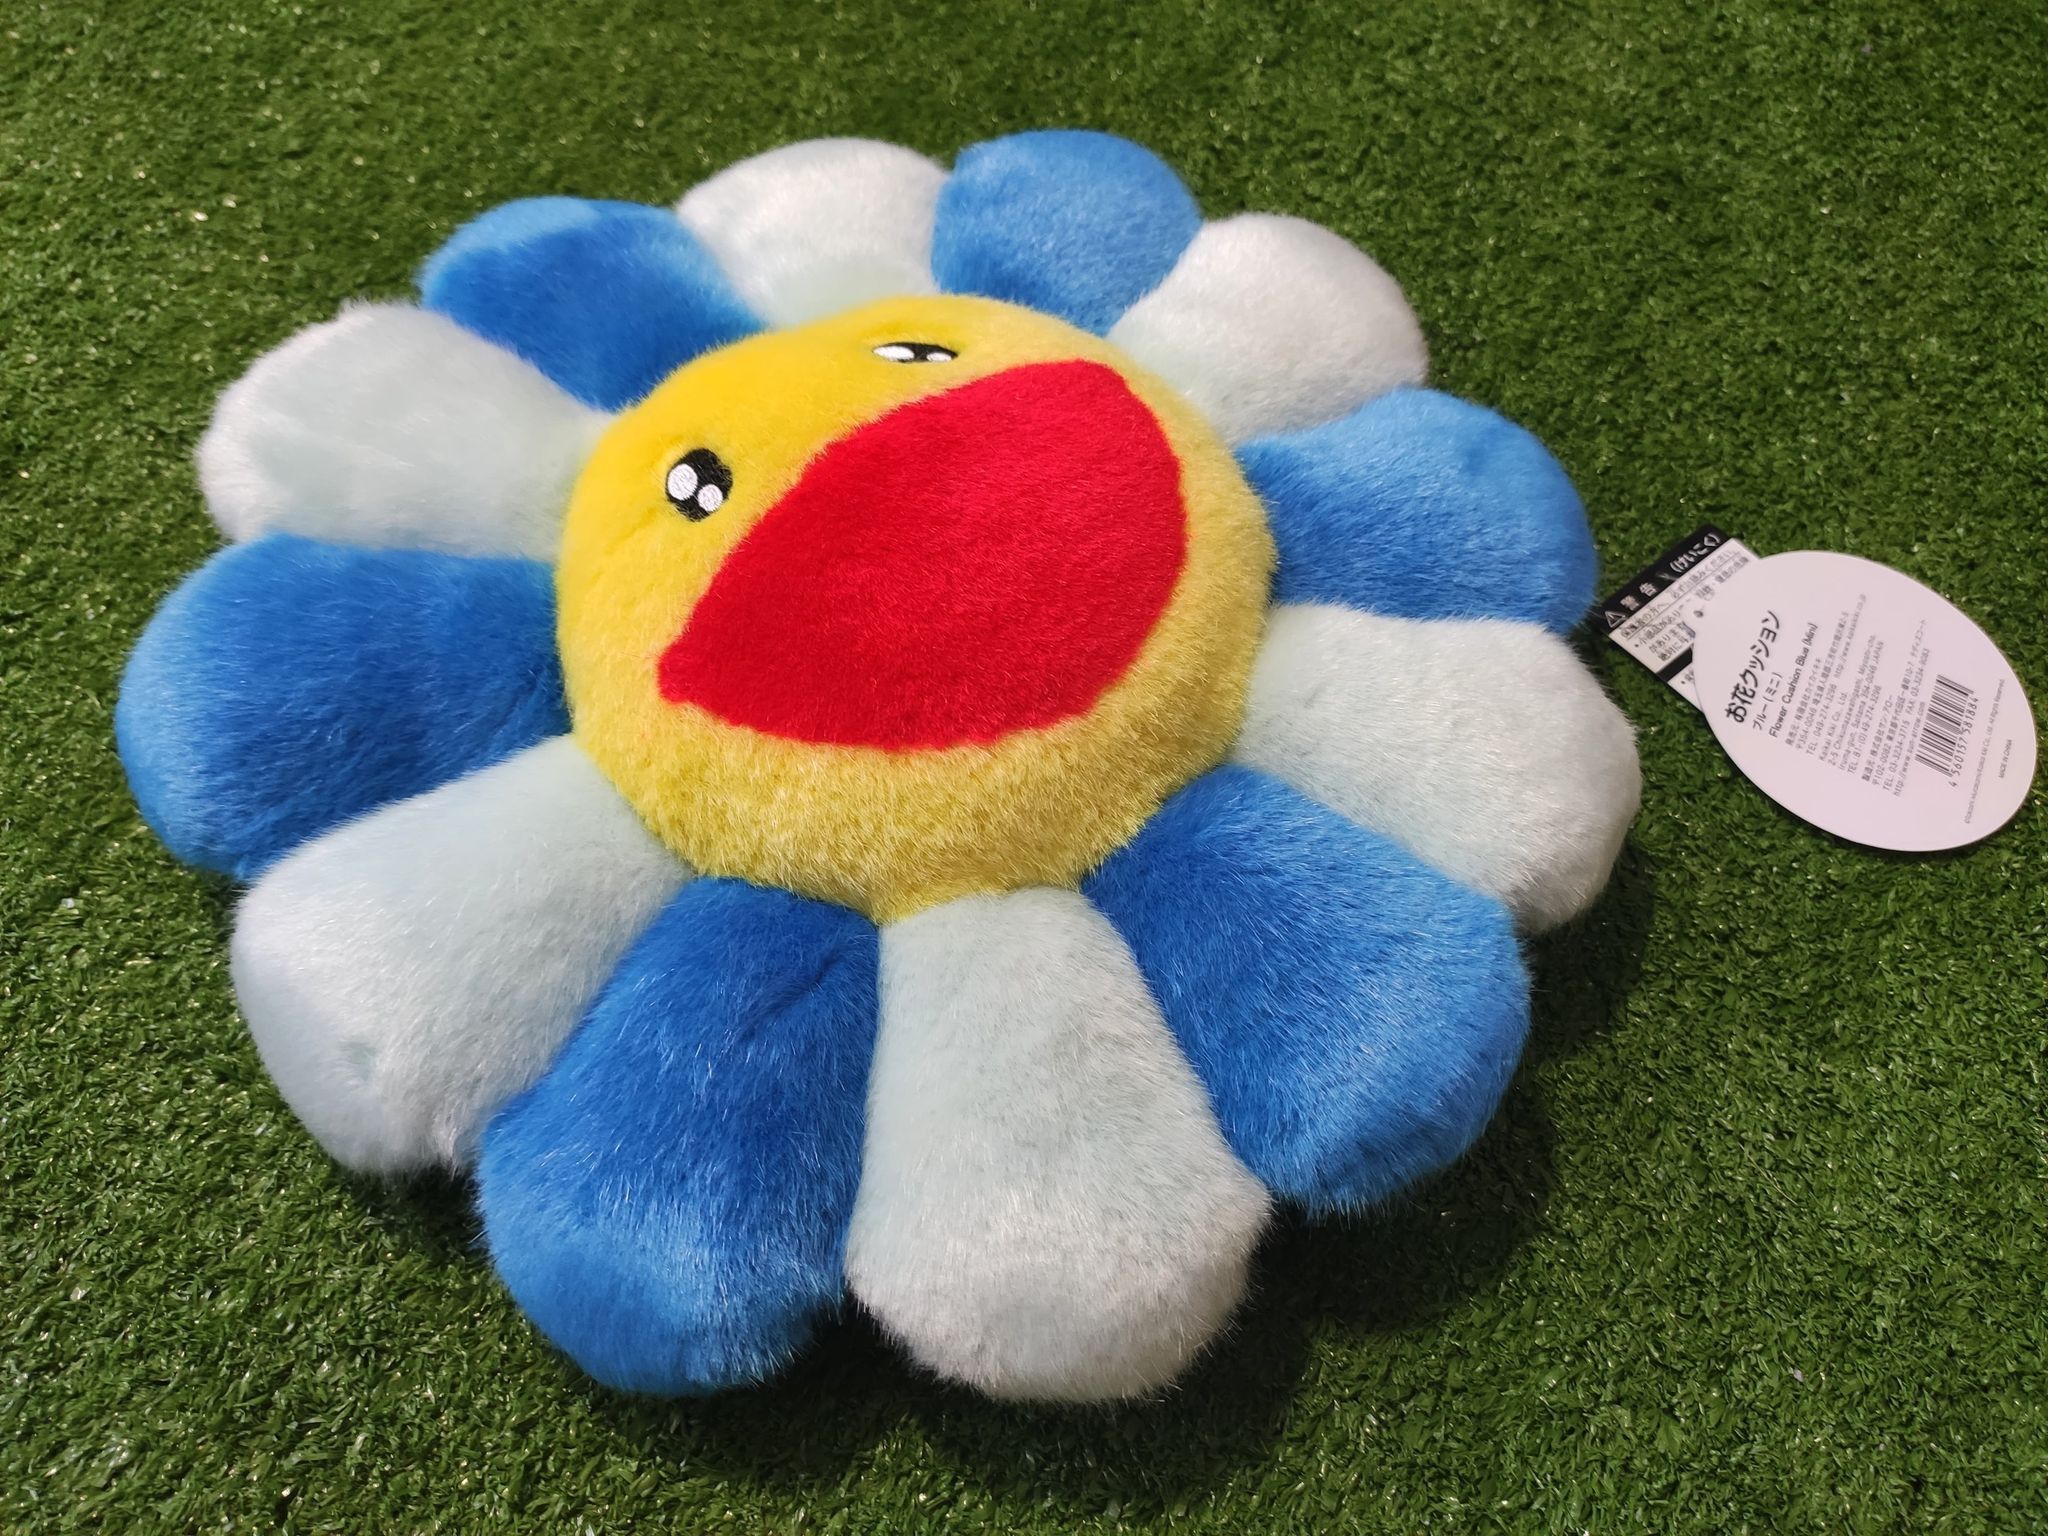 Takashi Murakami - Flower Cushion (Blue) - 30cm for Sale